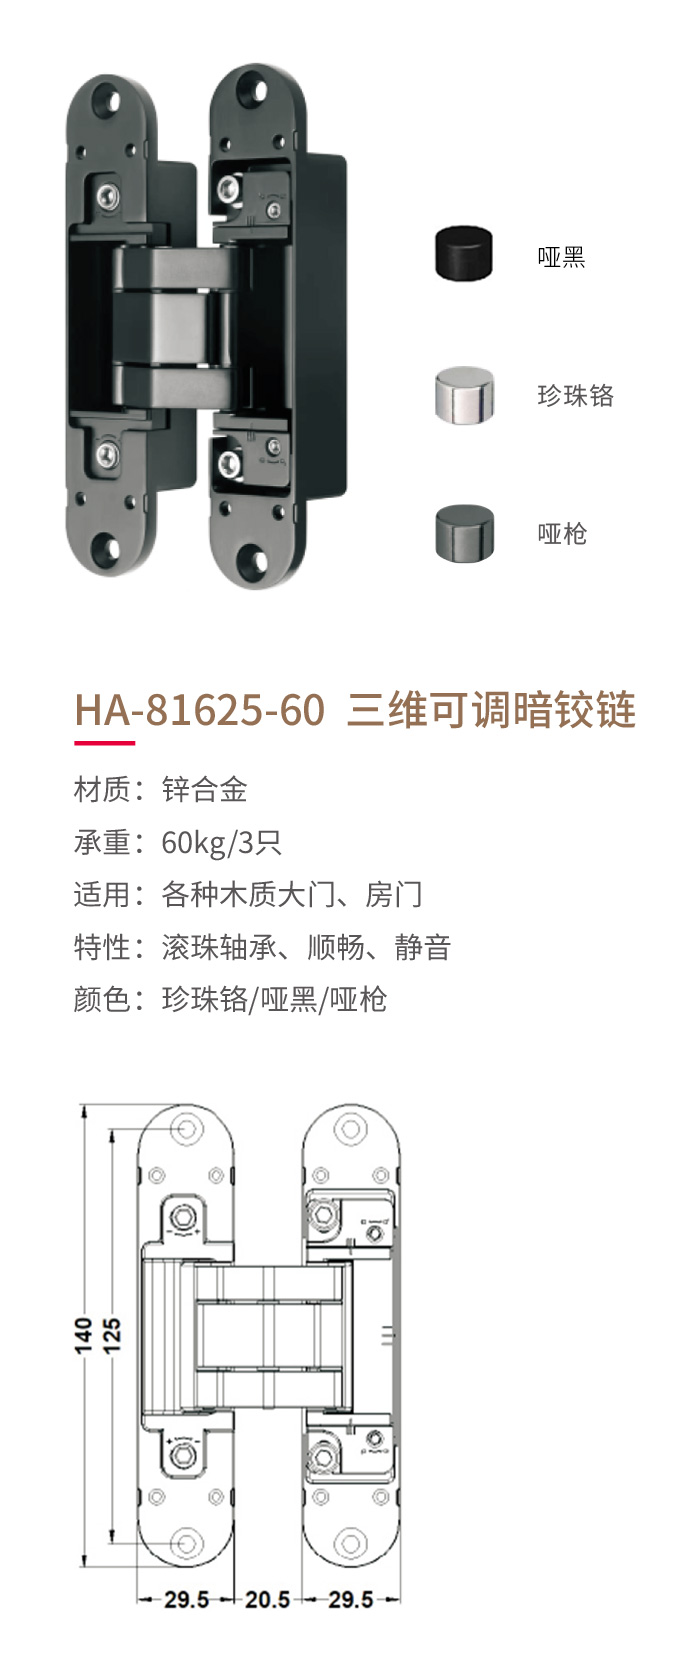 HA-81625-60-三维可调暗铰链-1.jpg